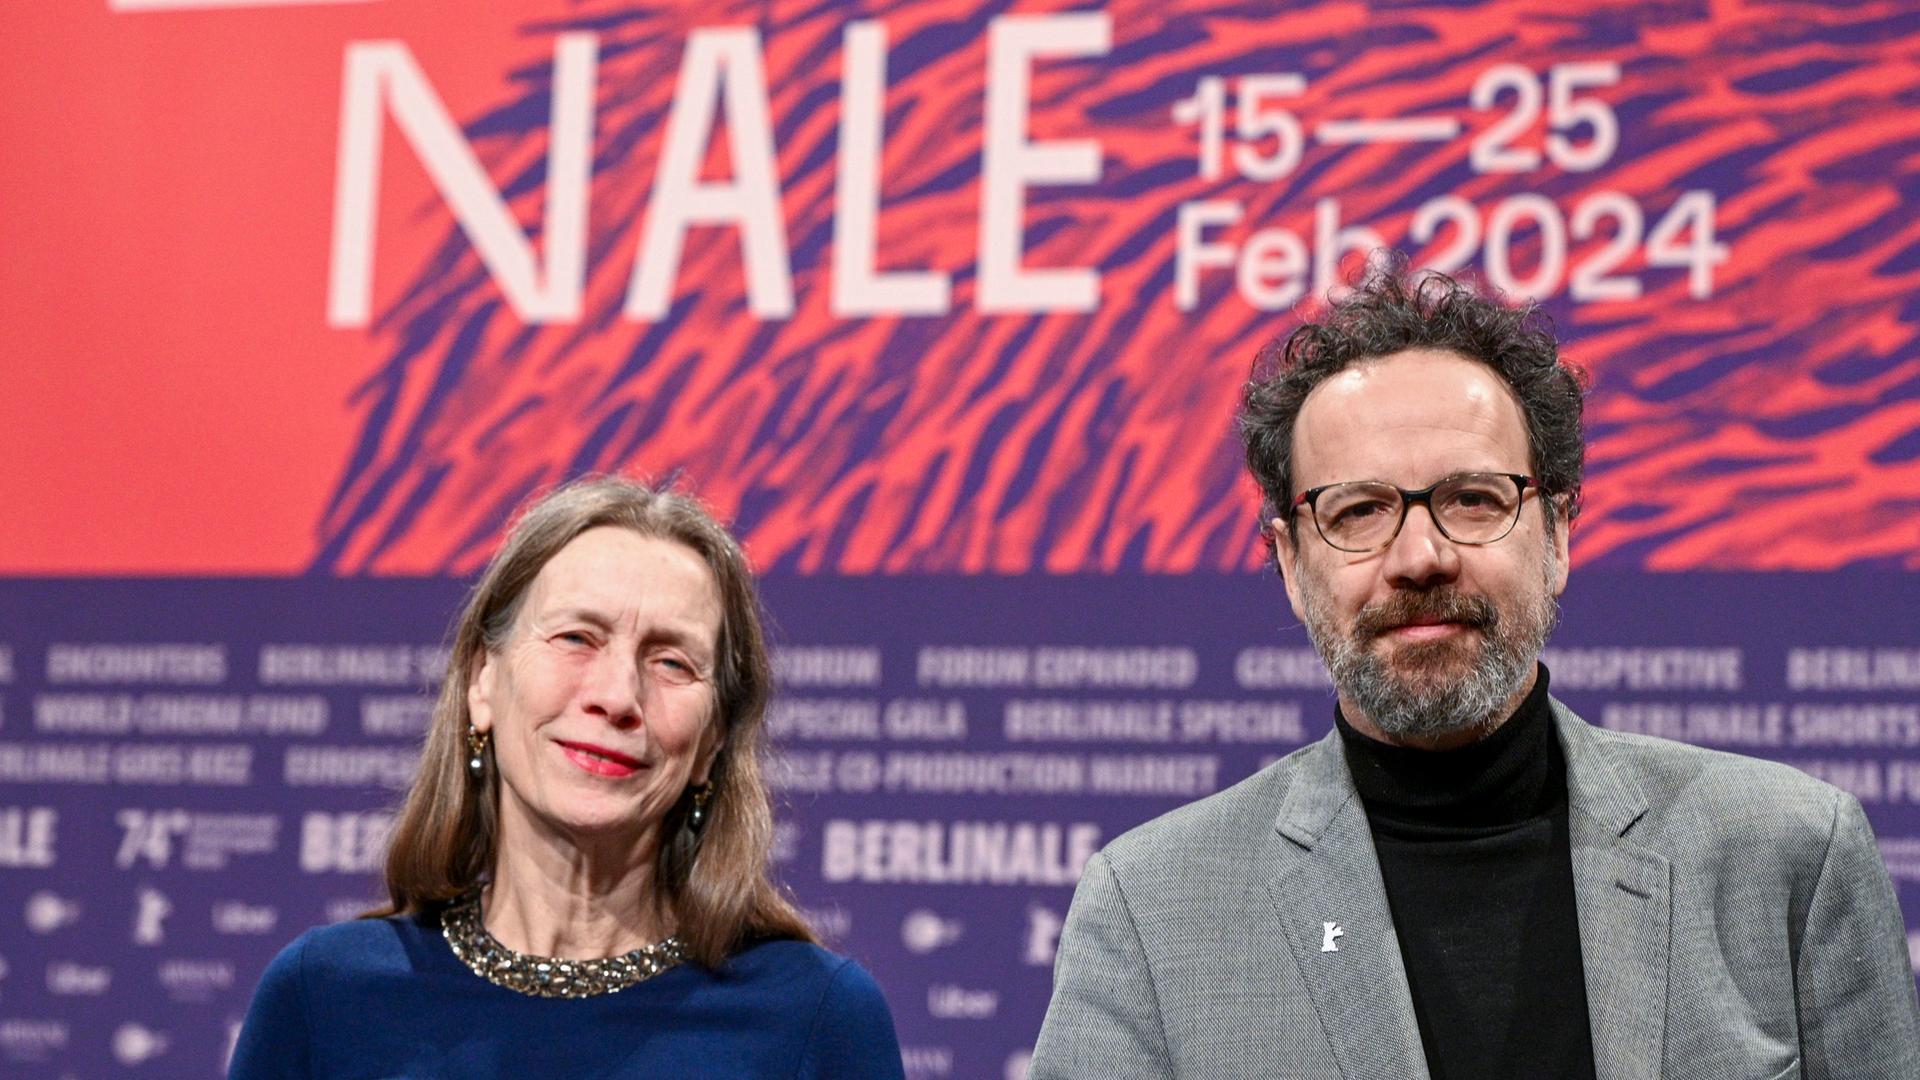 Berlin: Das Leitungs-Duo der Berlinale, Mariette Rissenbeek, Geschäftsführerin, und Carlo Chatrian, künstlerischer Direktor, stehen vor Beginn der Pressekonferenz zur Vorstellung Bekanntgabe des Berlinale-Programms 2024 mit Merchandiseartikeln der Berlinale auf der Bühne.